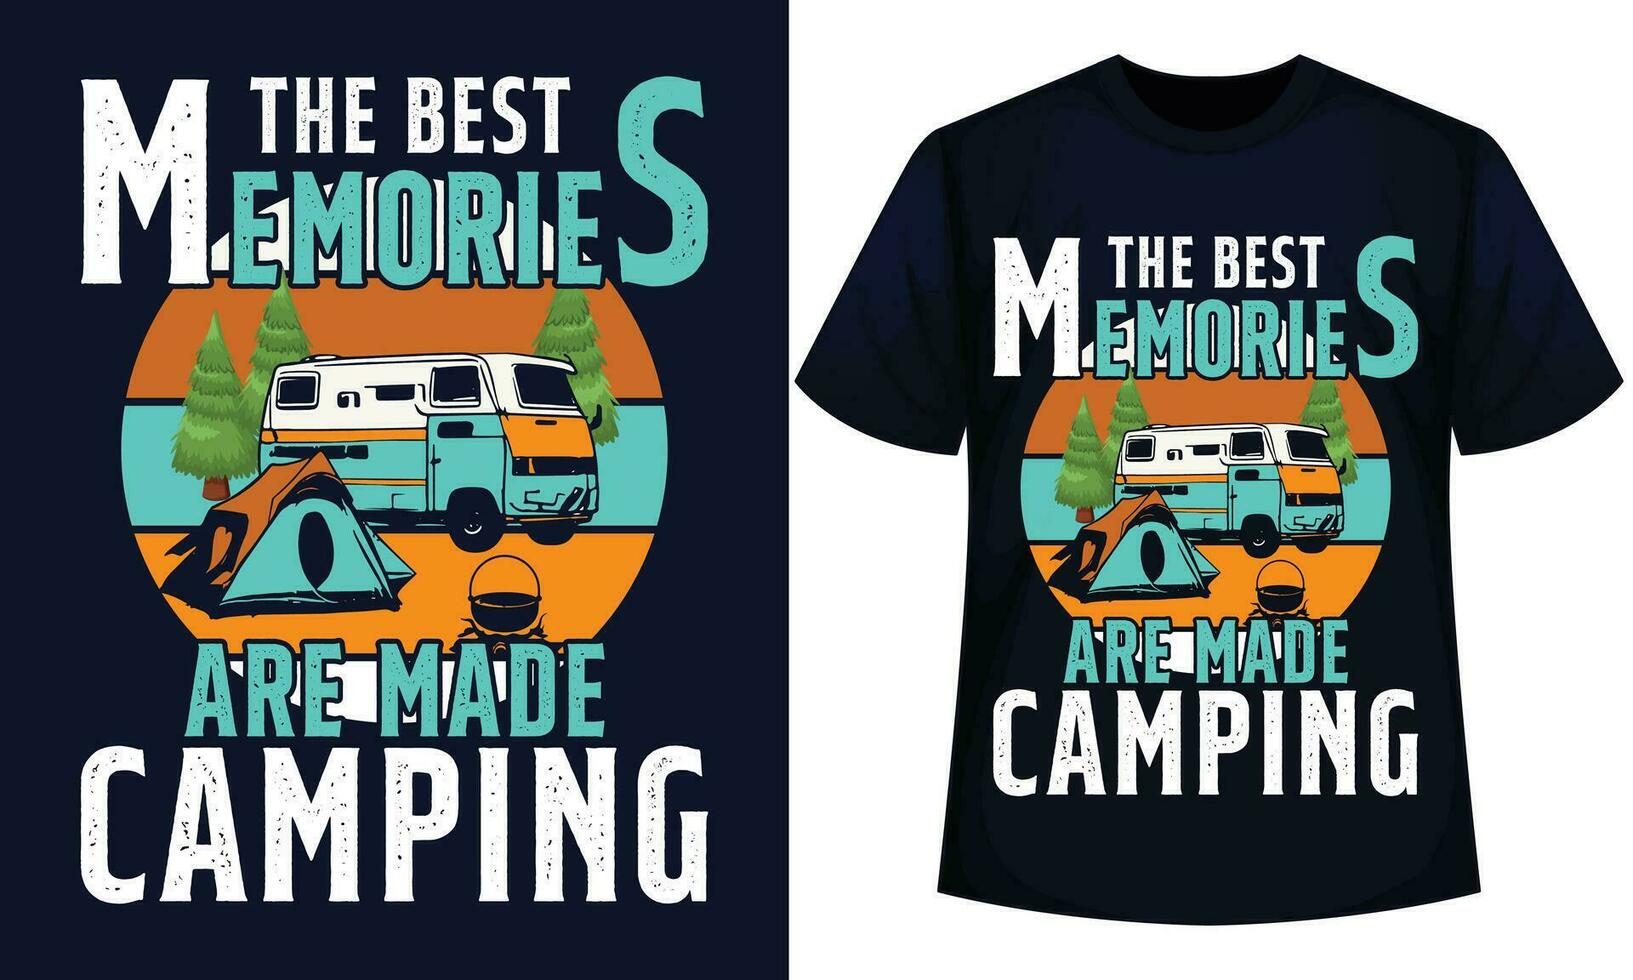 le meilleur souvenirs sont fabriqué camping, camping t chemise conception vecteur